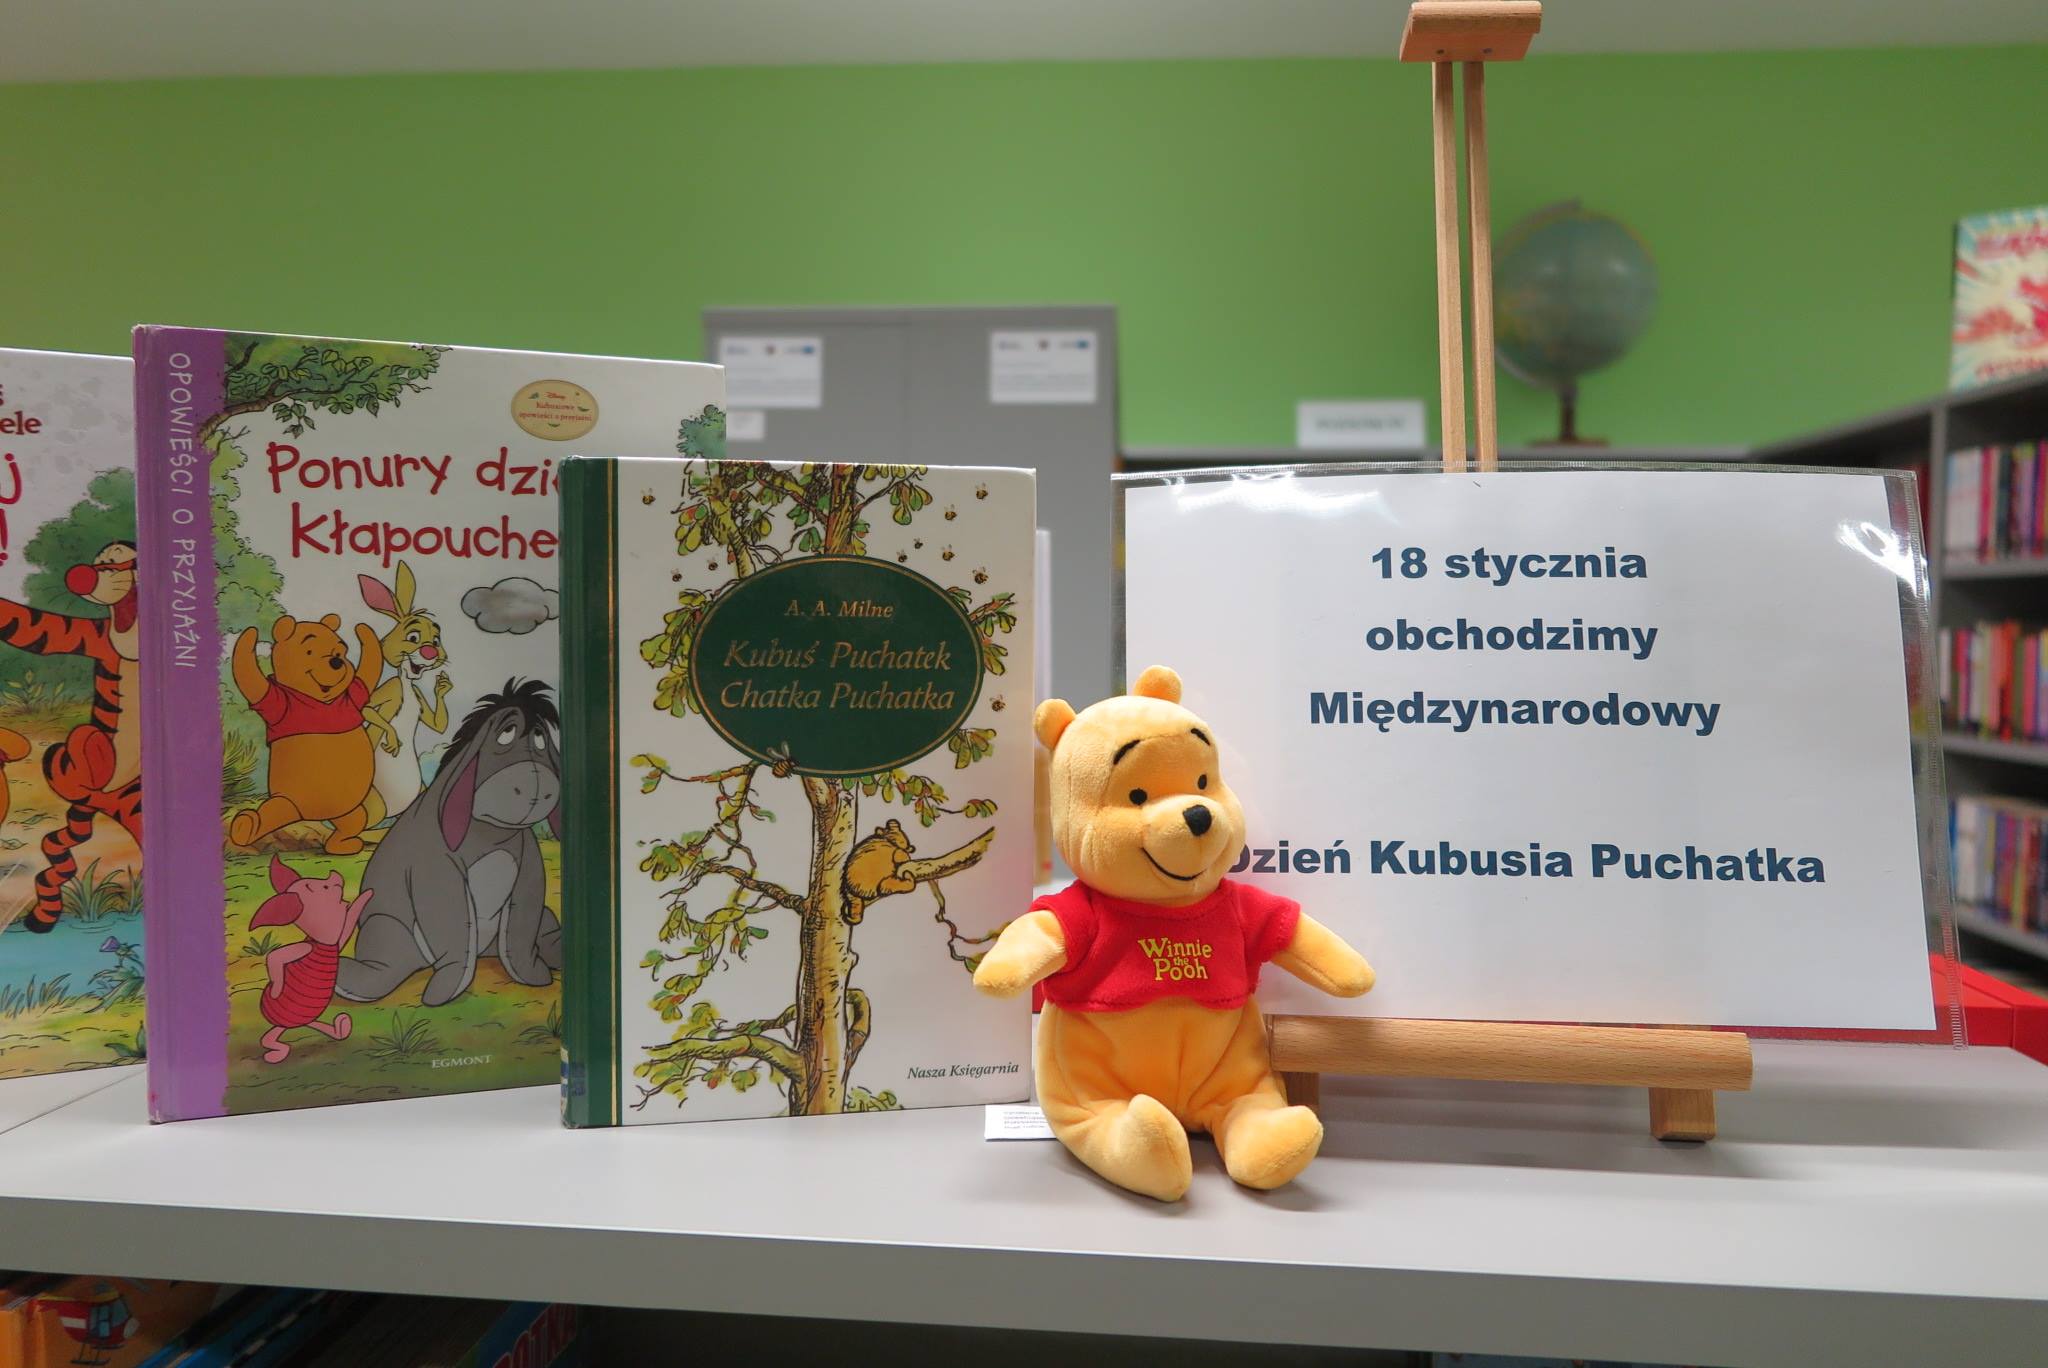 Na półce mini sztaluga z plakatem 18-stycznia obchodzimy Międzynarodowy Dzień Kubusia Puchatka obok książki Kubusia Puchatka oraz pluszowa maskotka Kubuś Puchatek.